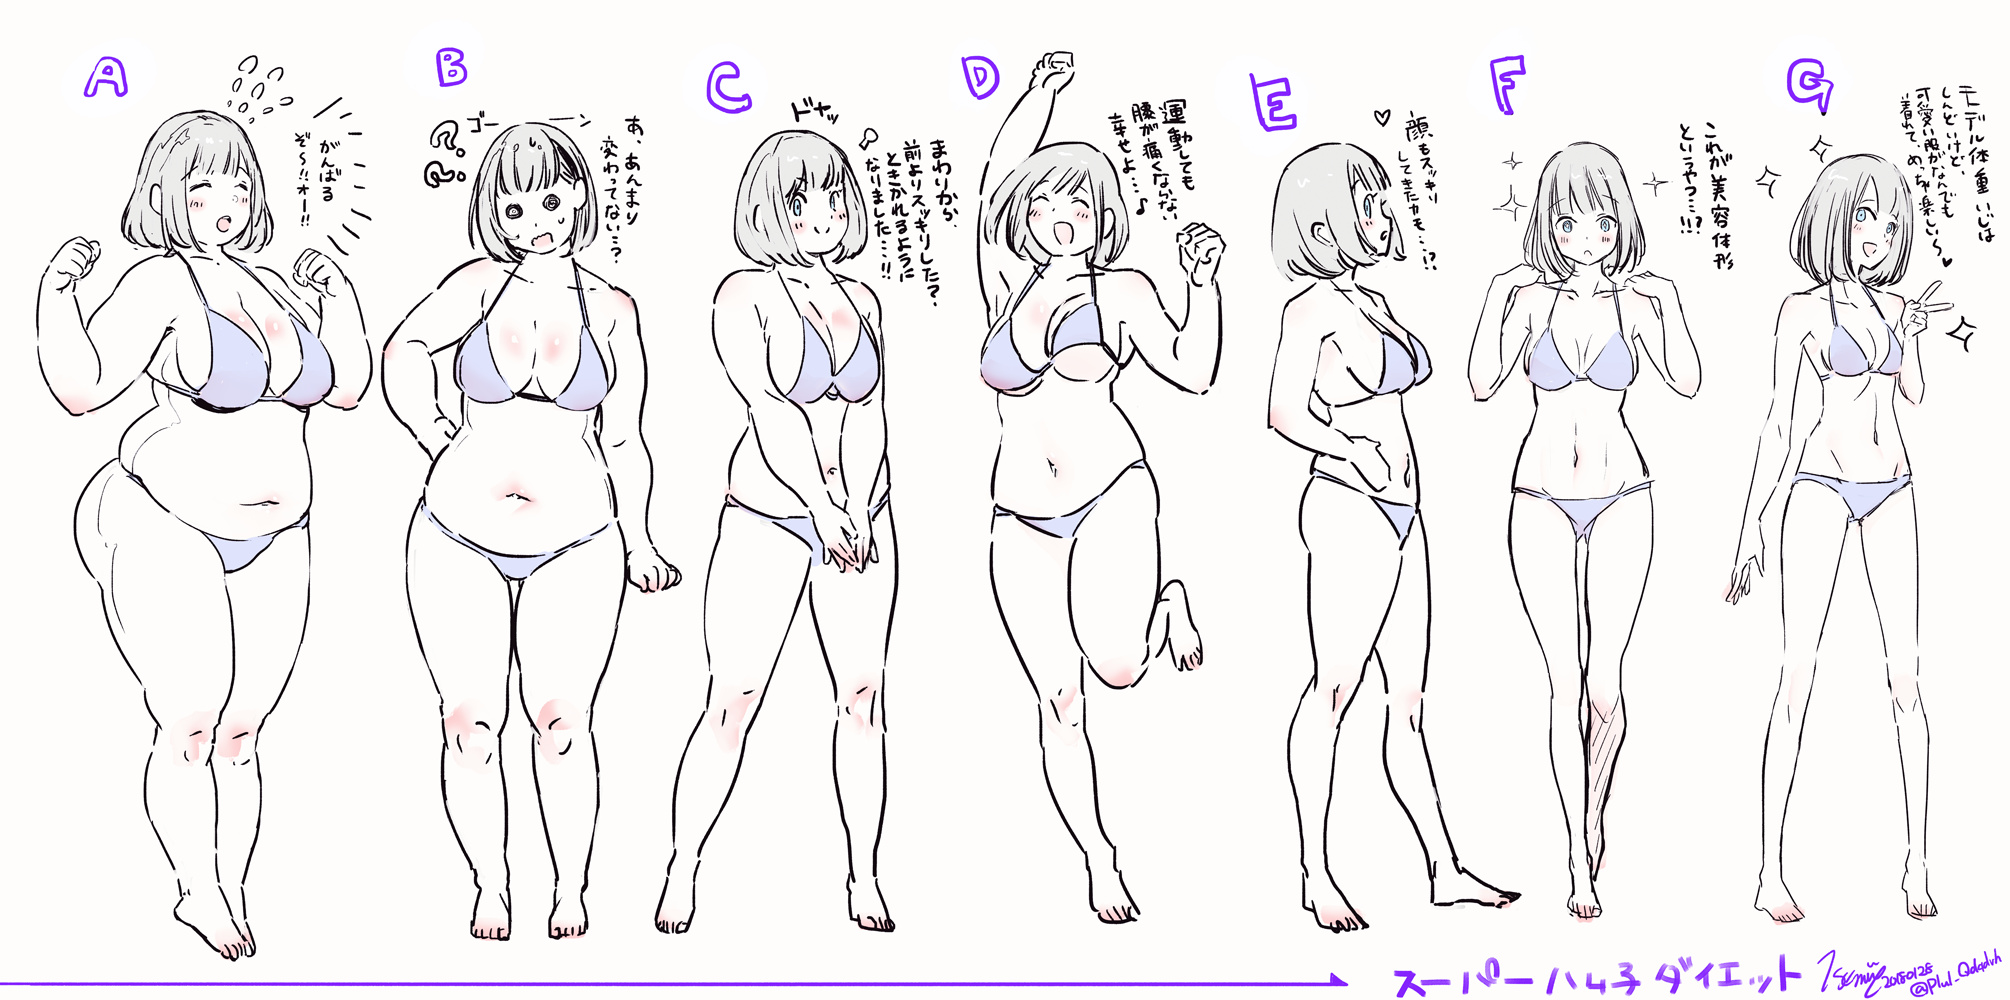 你最喜欢哪个体型？ ​​​​